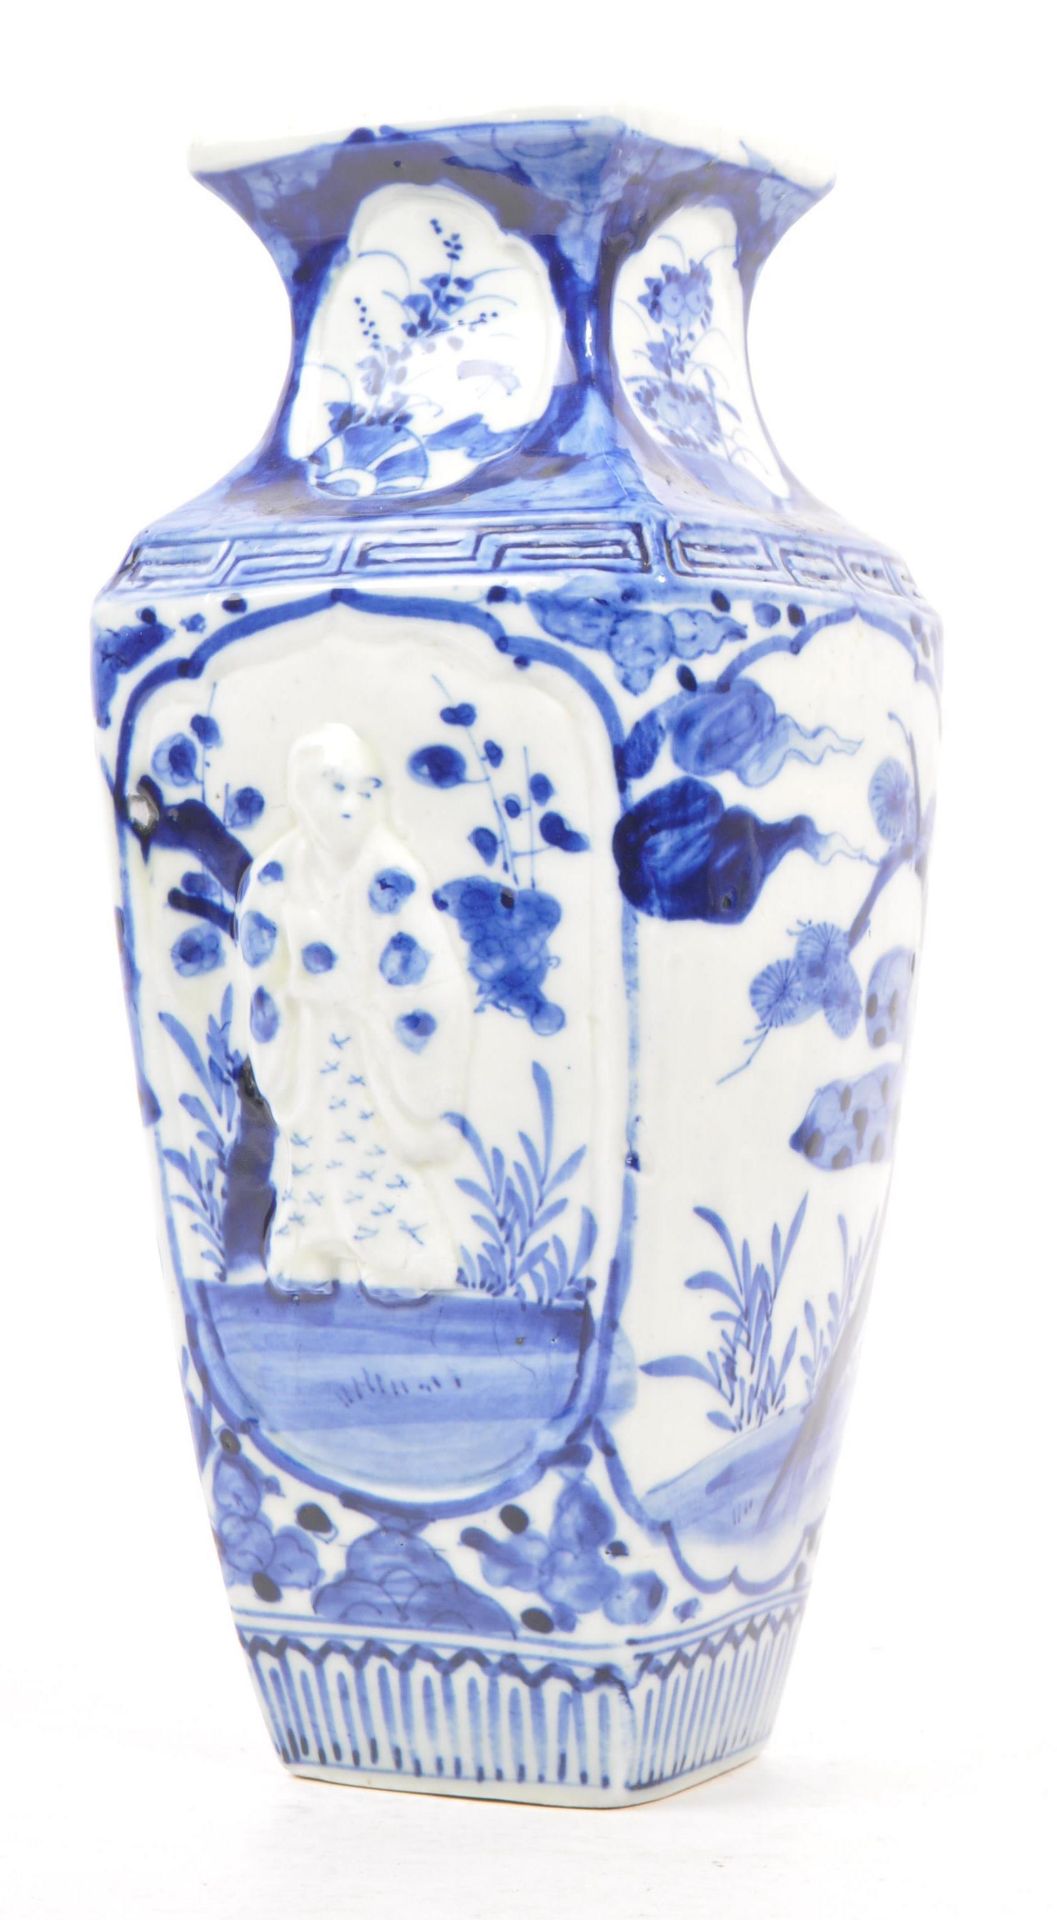 JAPANESE EARLY 20TH CENTURY PORCELAIN BLUE & WHITE VASE - Image 2 of 7